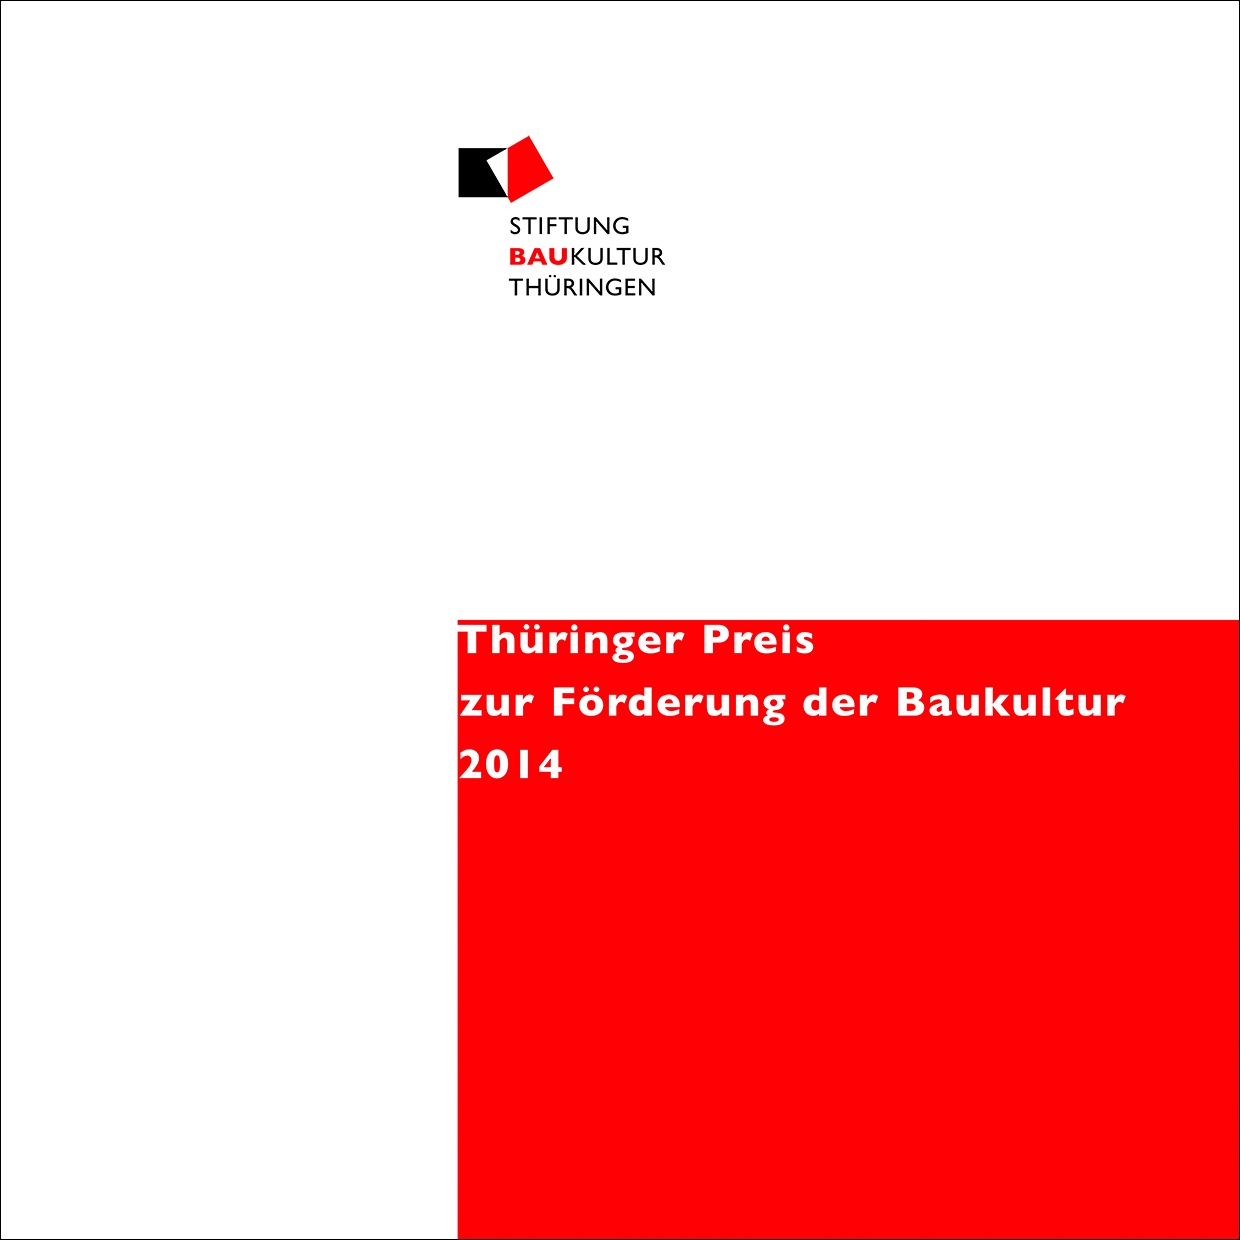 Publikation | Preis zur Förderung der Baukultur 2014, Bild: Stiftung Baukultur Thüringen